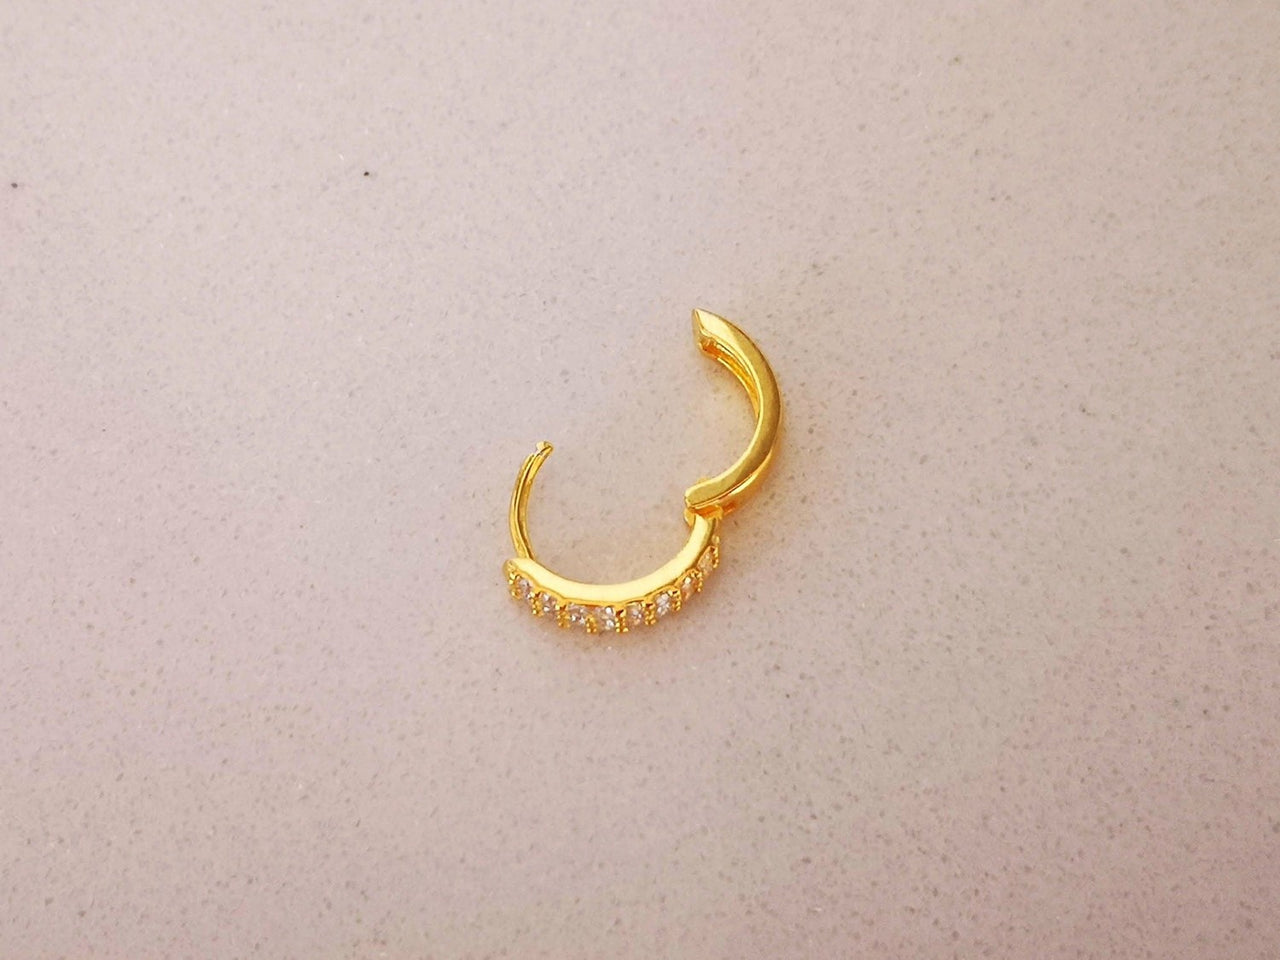 Branch (2) 21 karat gold earrings, weight 4.83 grams - مصاغات الأربش للذهب  بالسعودية قسم المتجر الإلكتروني